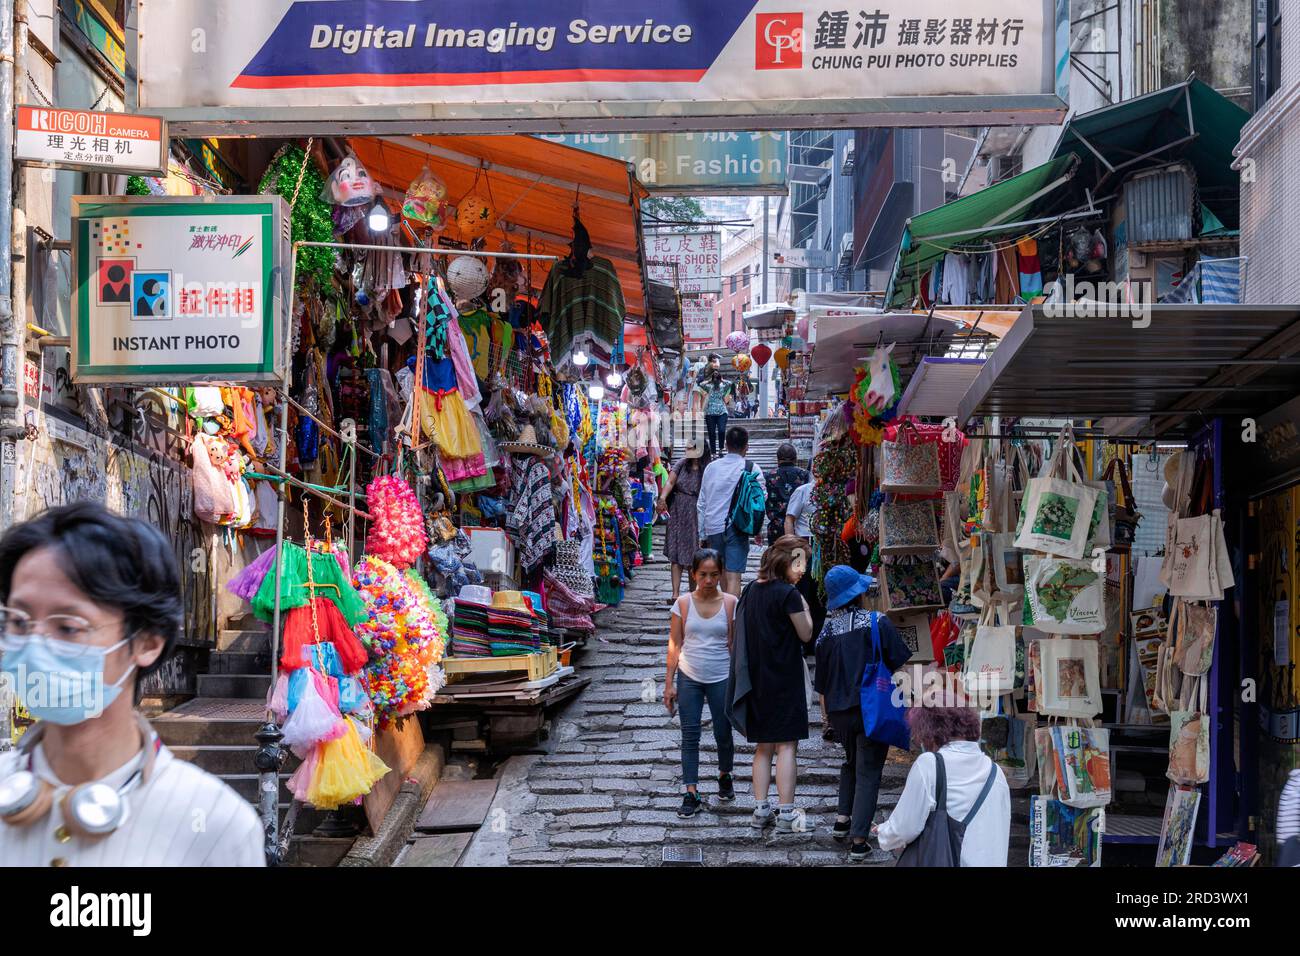 Personnes, magasins et marches sur Pottinger Street, Central, Hong Kong, SAR, Chine Banque D'Images